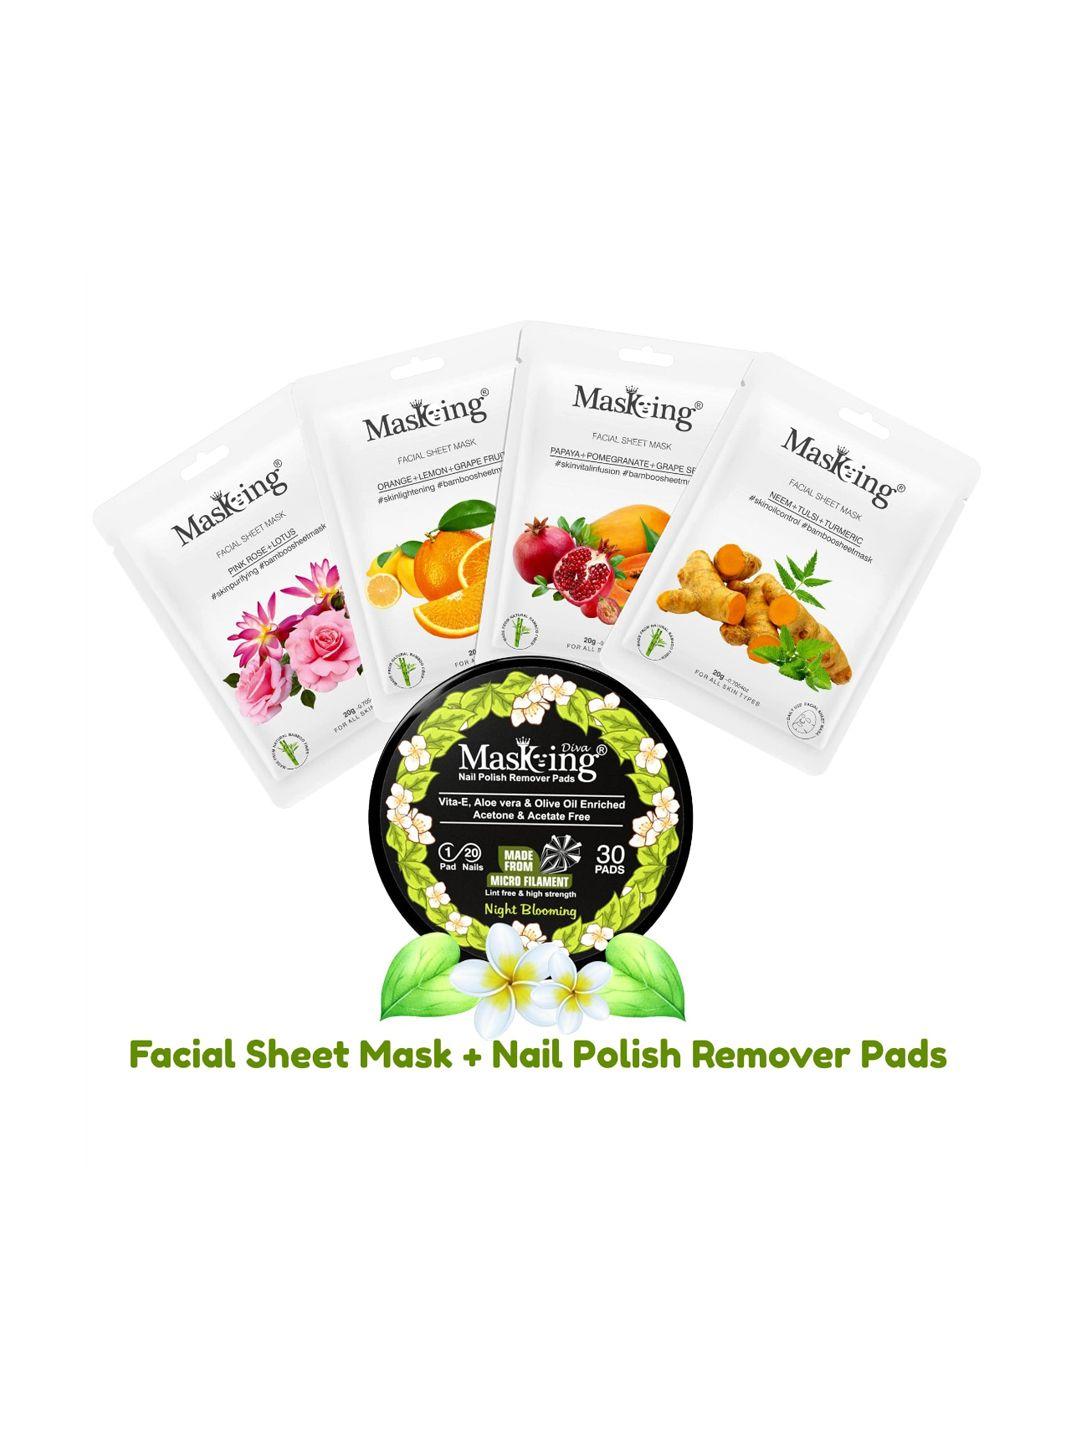 masking pack of 5 facial sheet mask & nail polish remover pads